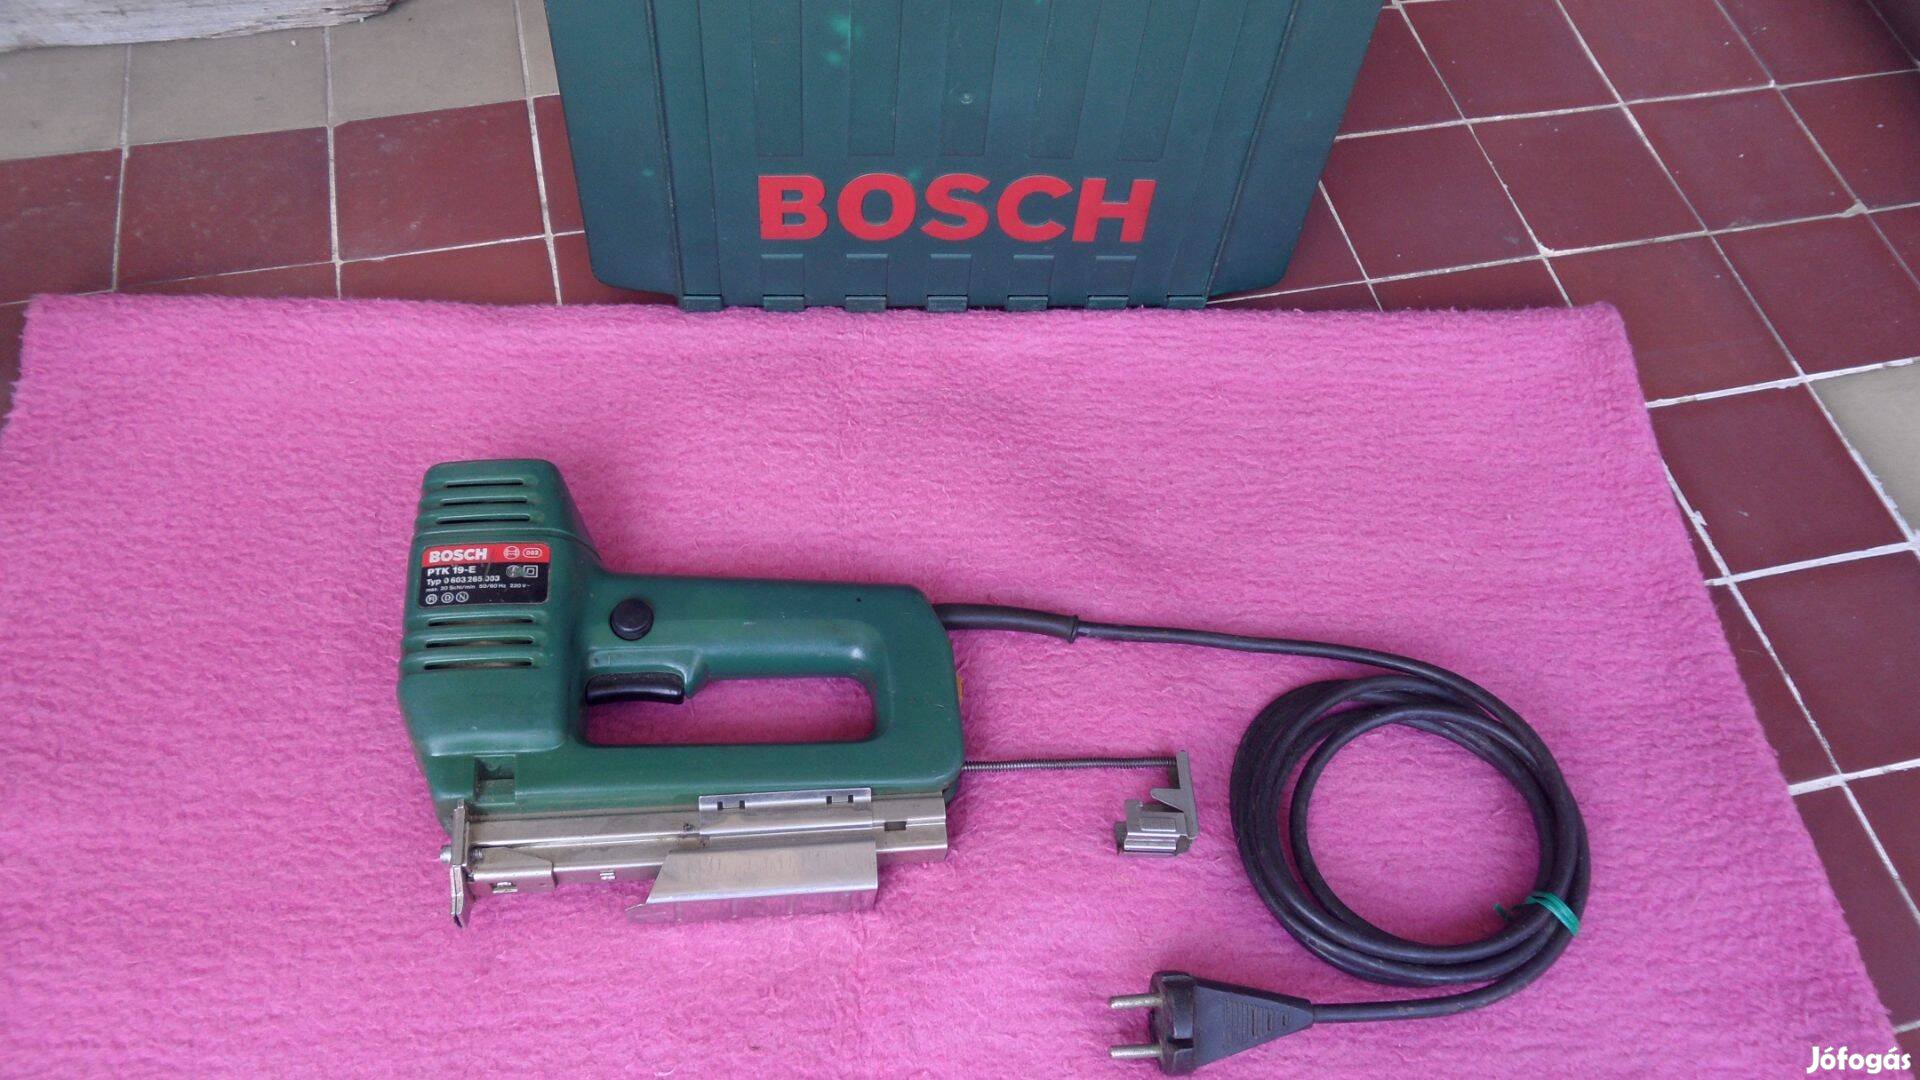 Bosch kézi tűzőgép & szögbelövő PTK 19 E kapcsozó gép 230 V